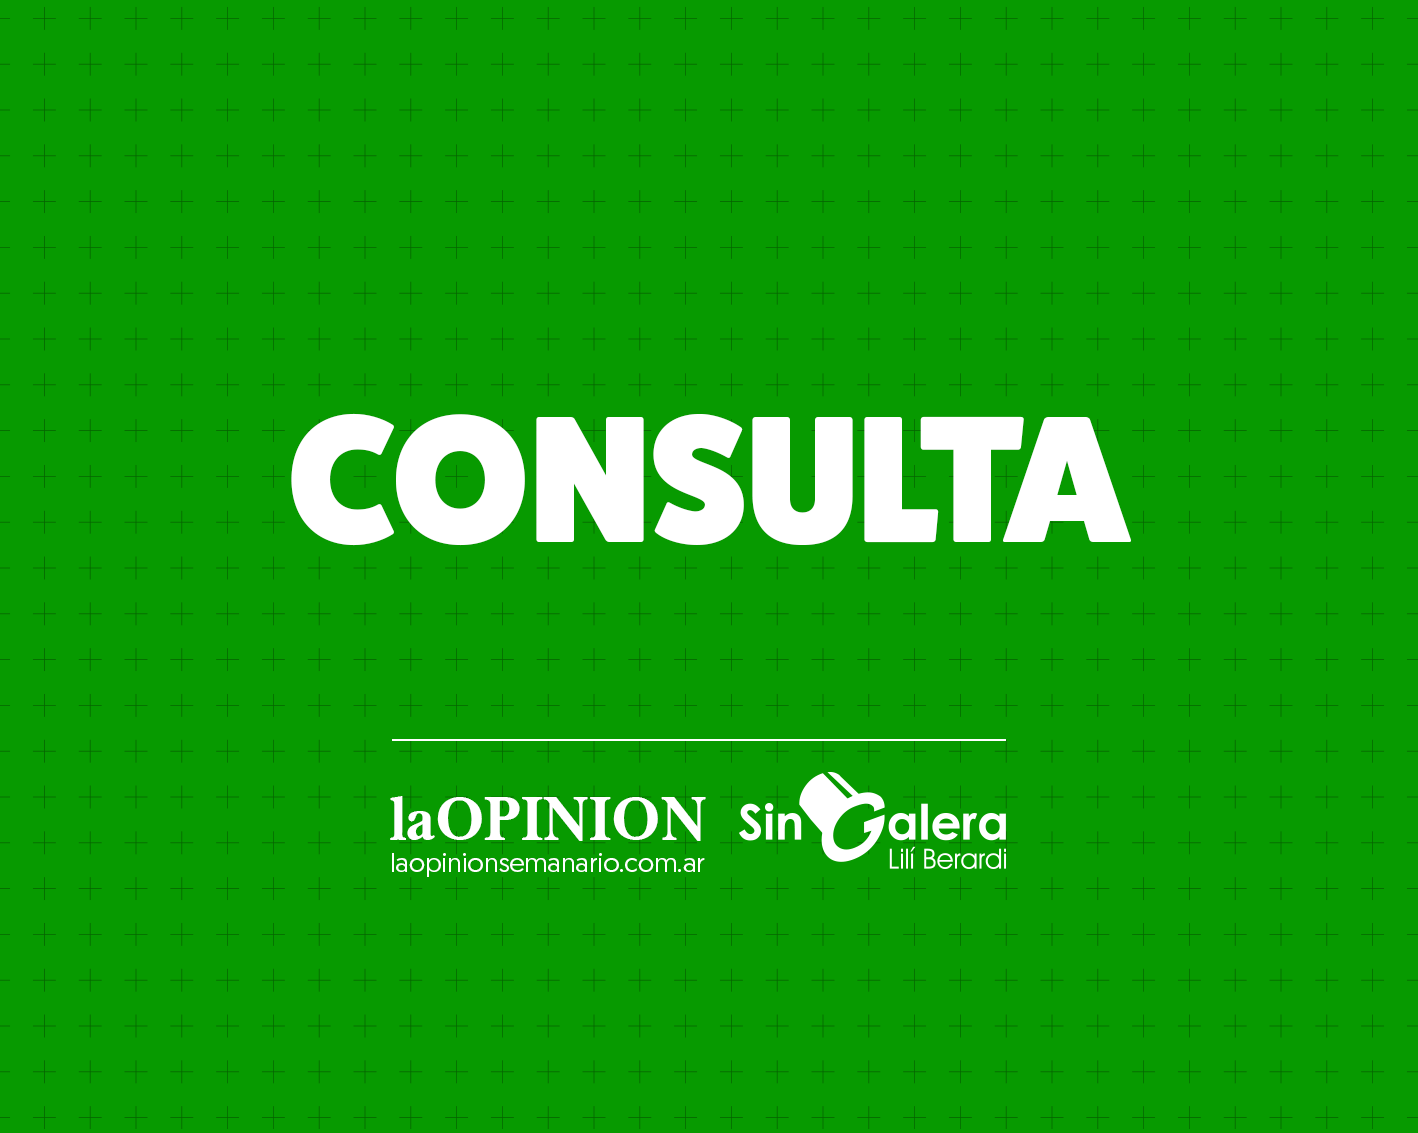 Consulta por el centro de salud de Villa Igoillo: “¿Hasta cuando cerrada?”